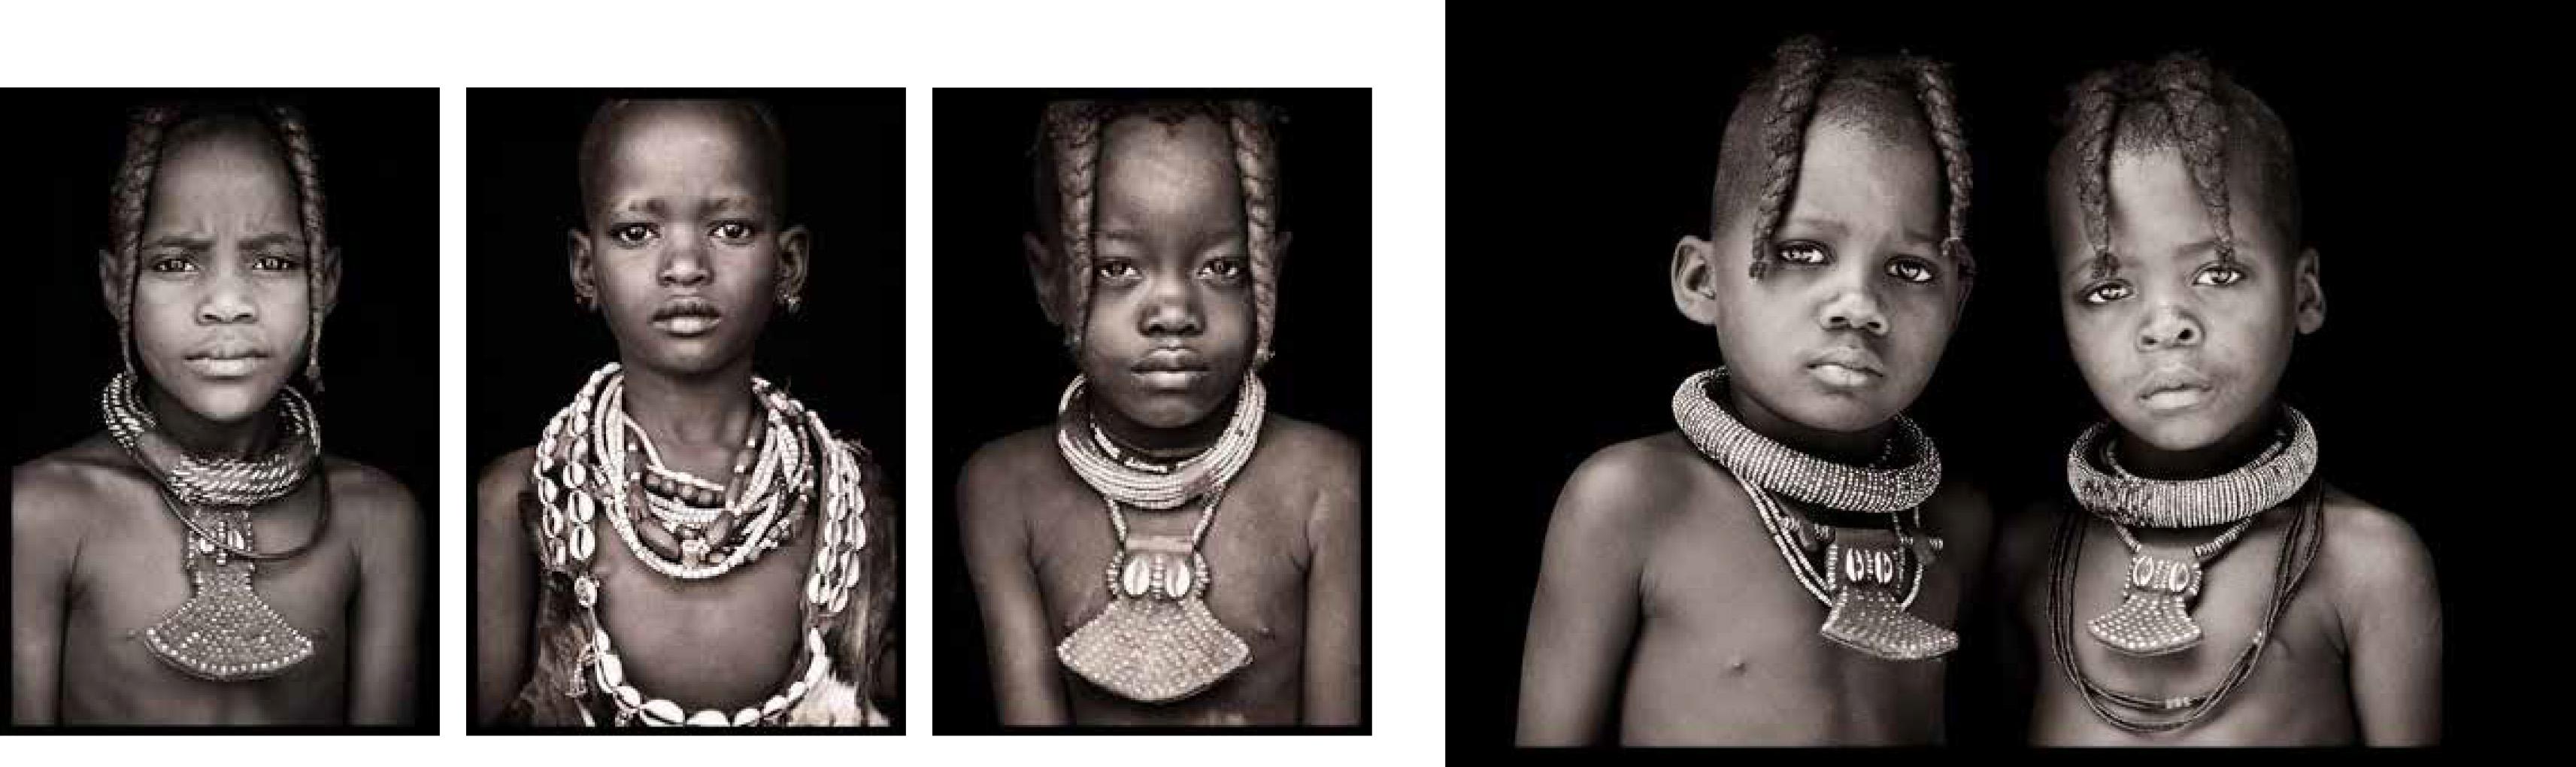 Quatre pièces célébrant la jeunesse en Afrique.

3 pièces 90 x 60cm avec support acrylique
1 pièce 135 x 90cm impression seule, avec une bordure blanche de 5cm sur tout le pourtour